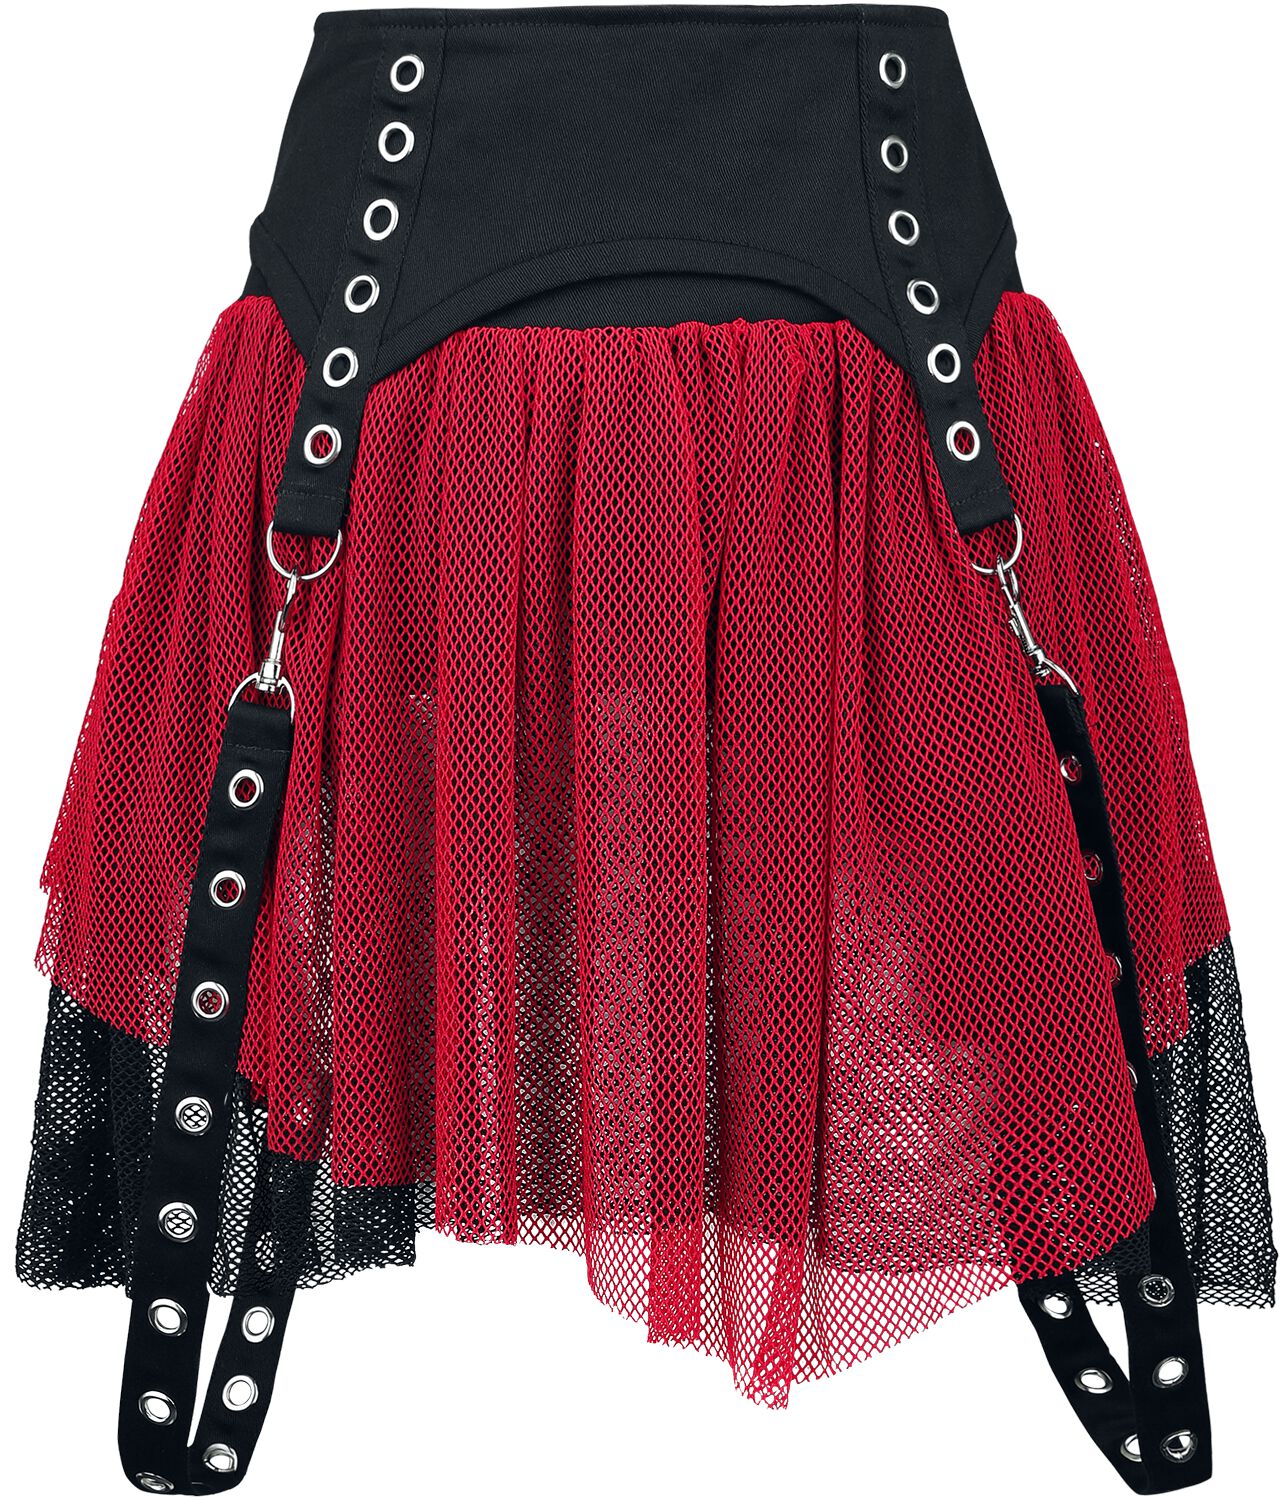 Poizen Industries - Gothic Kurzer Rock - Cybele Skirt - XS bis XXL - für Damen - Größe XL - schwarz/rot